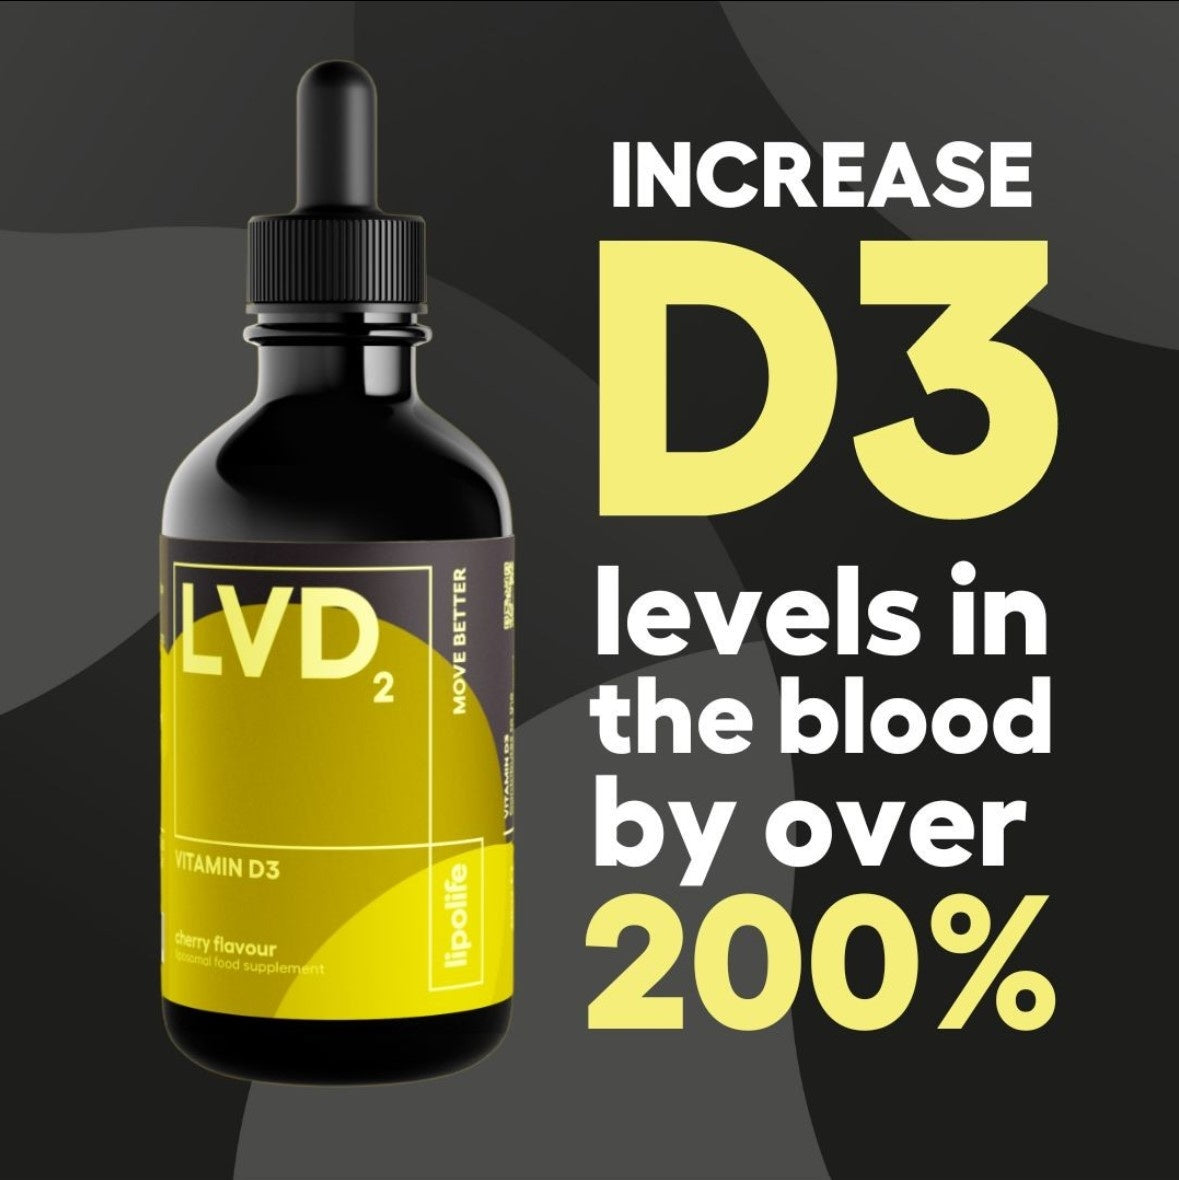 LVD2 Lipolife Vitamine D3 VEGAN liposomaal kopen , 60ml